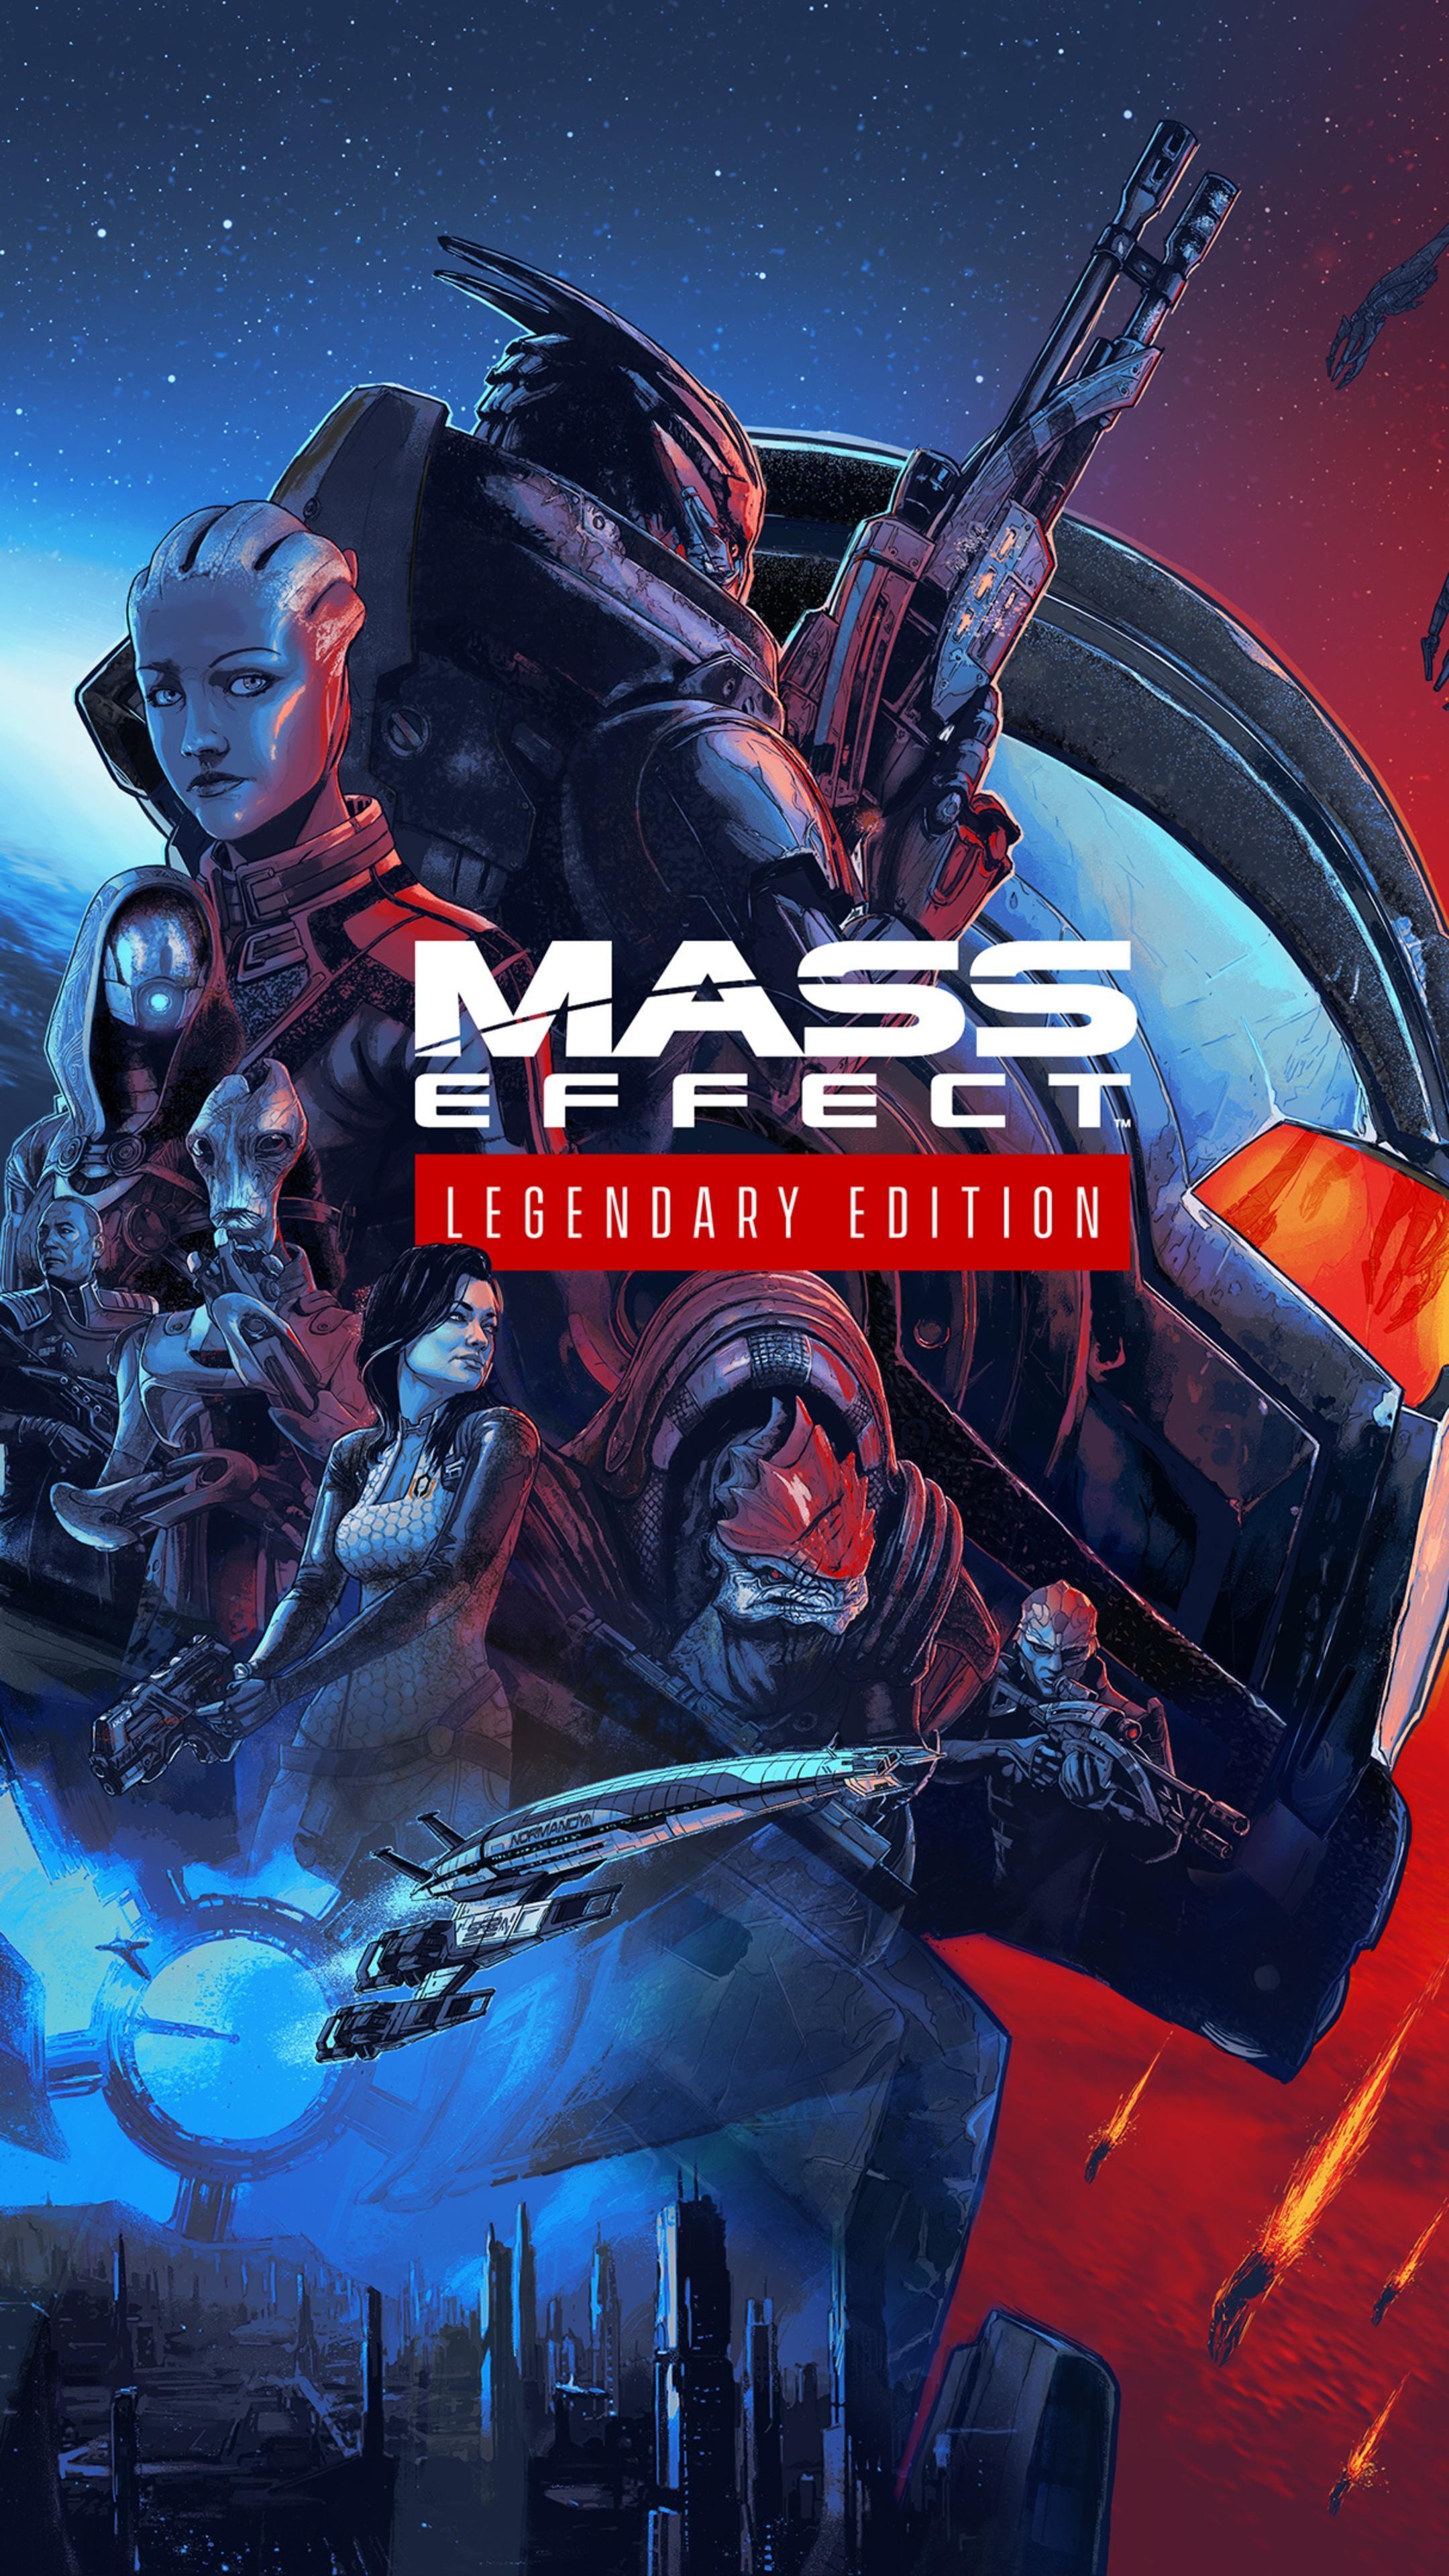 HD wallpaper, Hd, 4K, 2021 Games, Mass Effect, Games, Mass Effect Legendary Edition